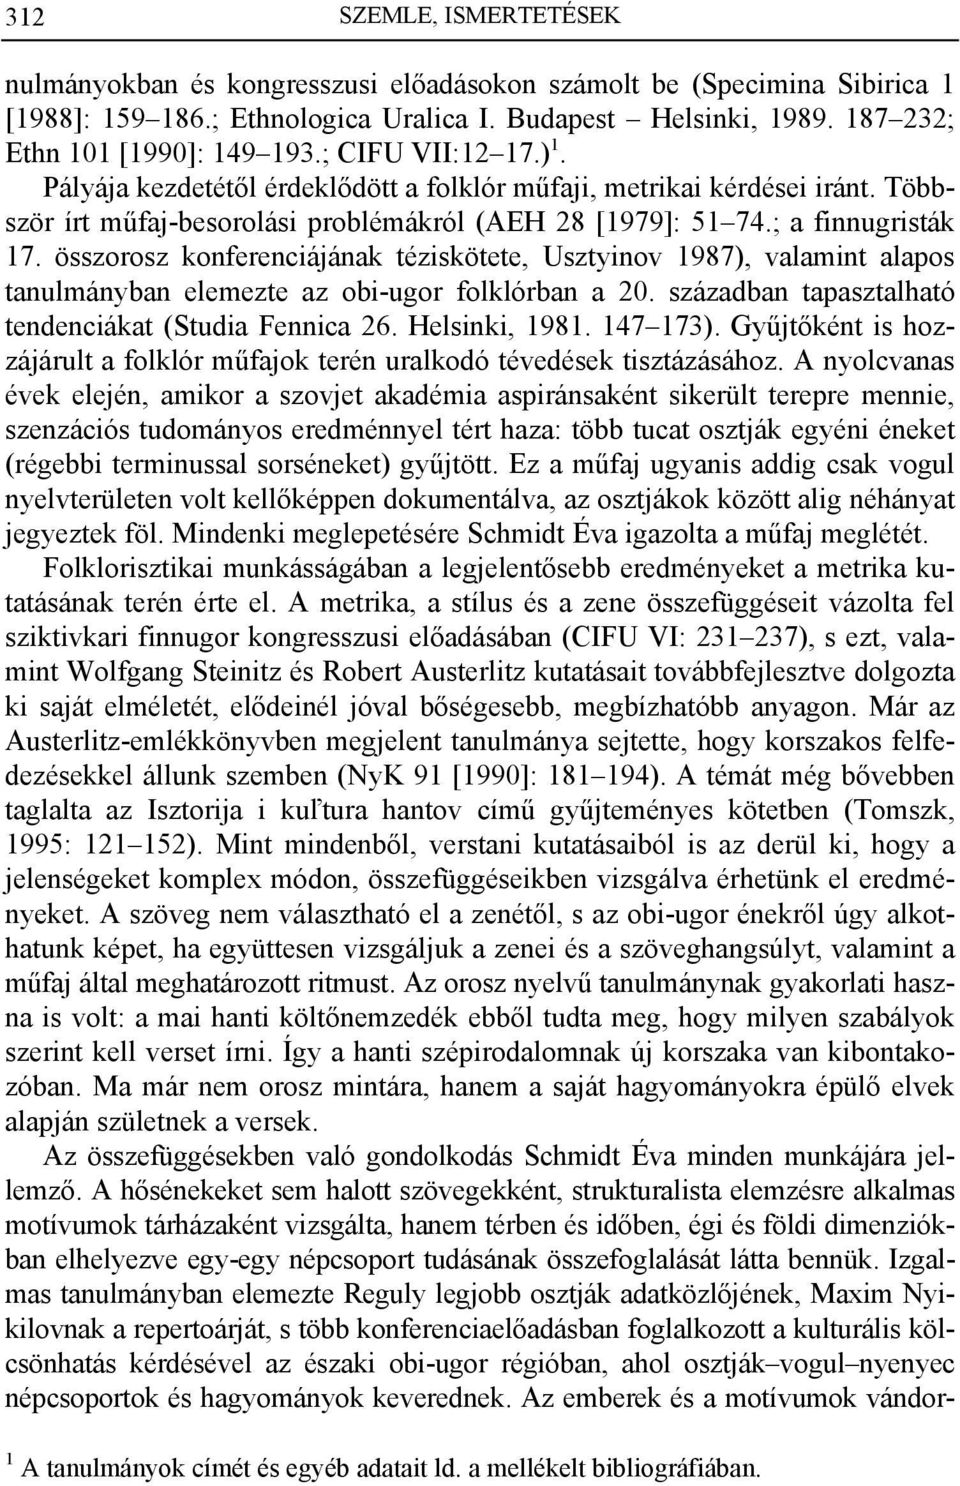 összorosz konferenciájának téziskötete, Usztyinov 1987), valamint alapos tanulmányban elemezte az obi-ugor folklórban a 20. században tapasztalható tendenciákat (Studia Fennica 26. Helsinki, 1981.